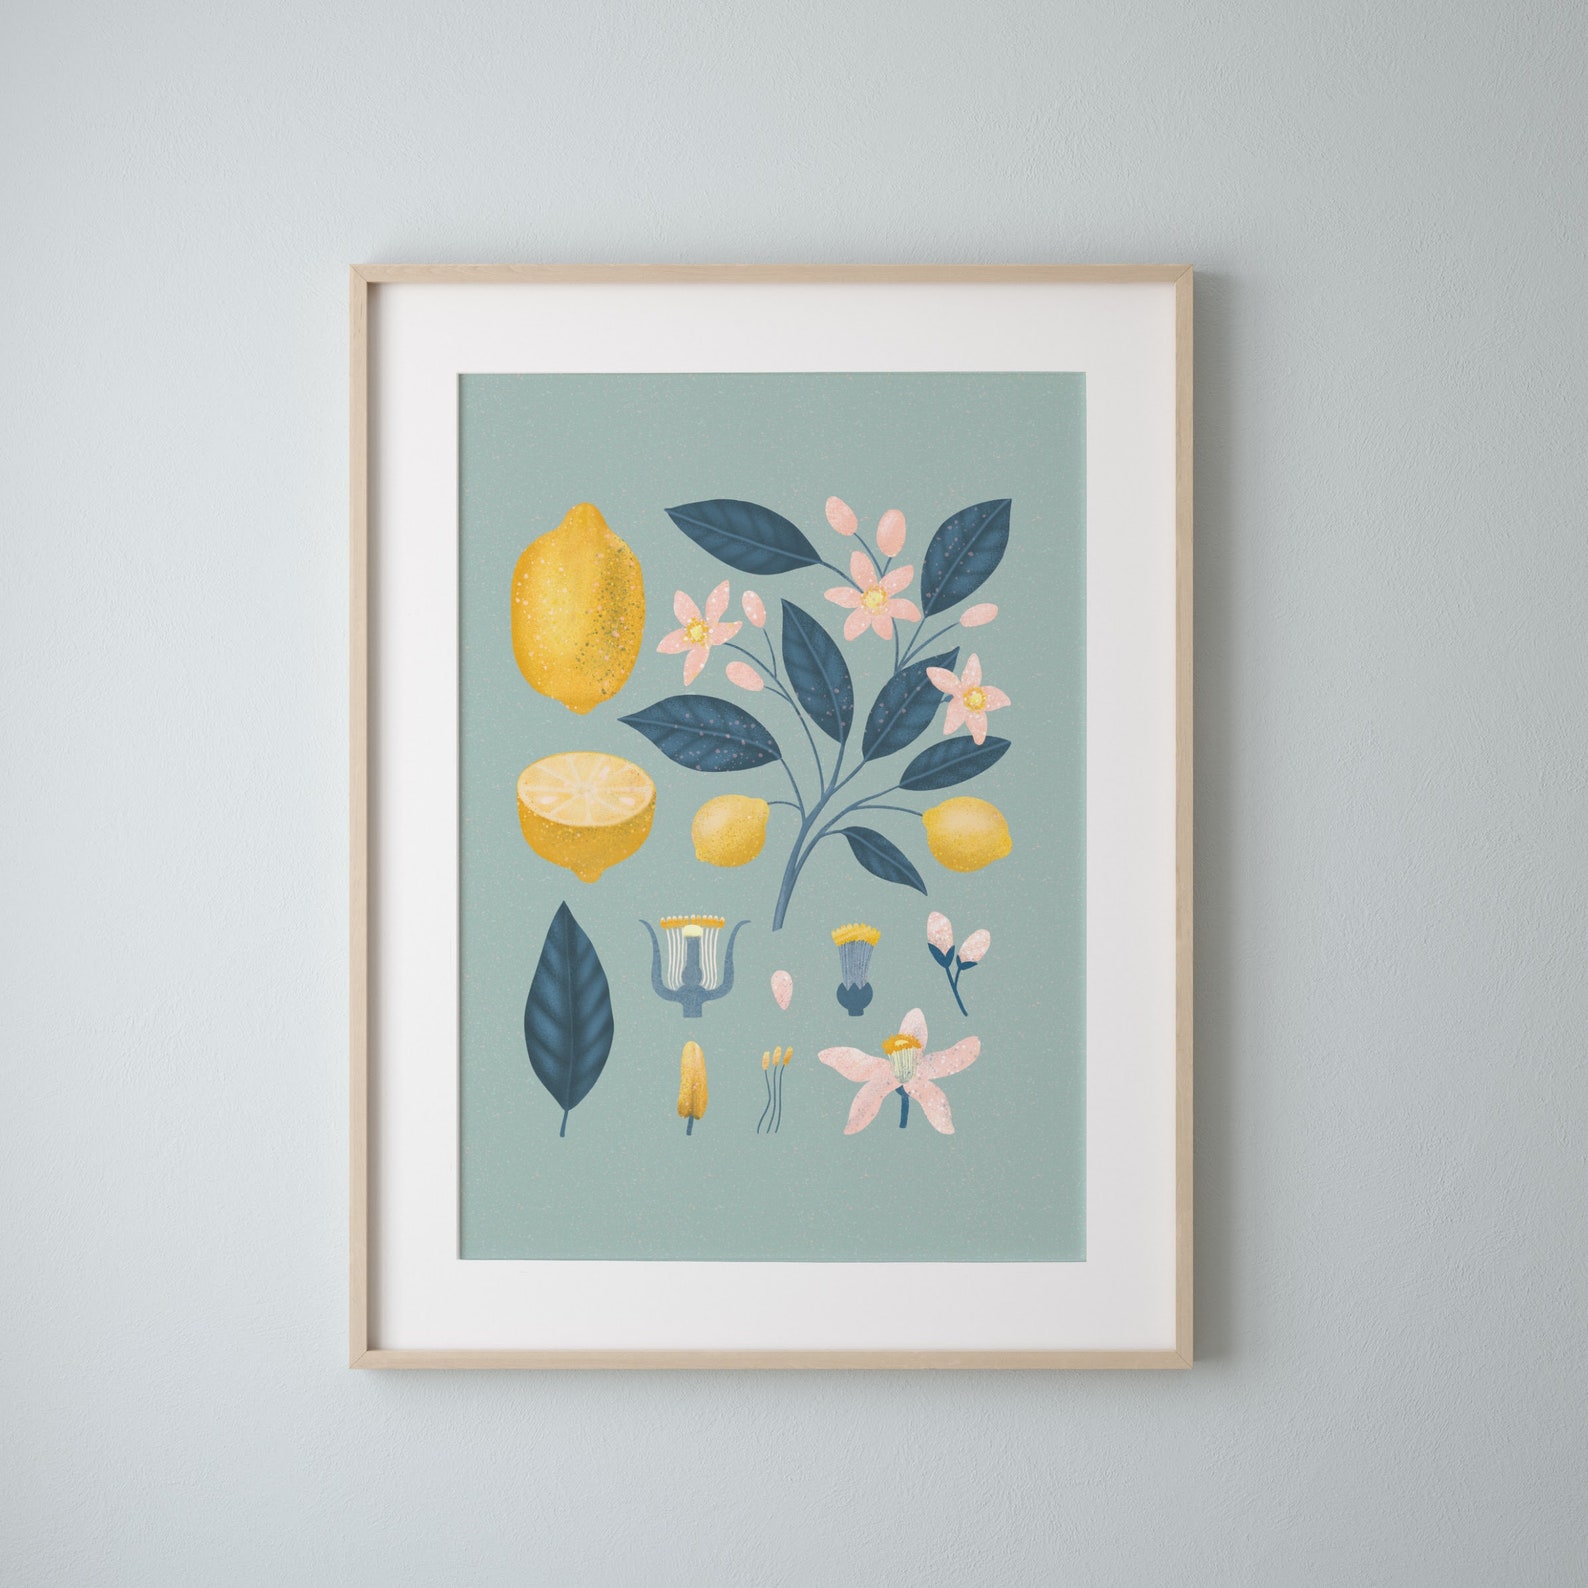 Lemon botanical drawing vintage style botanical poster lemon | Etsy